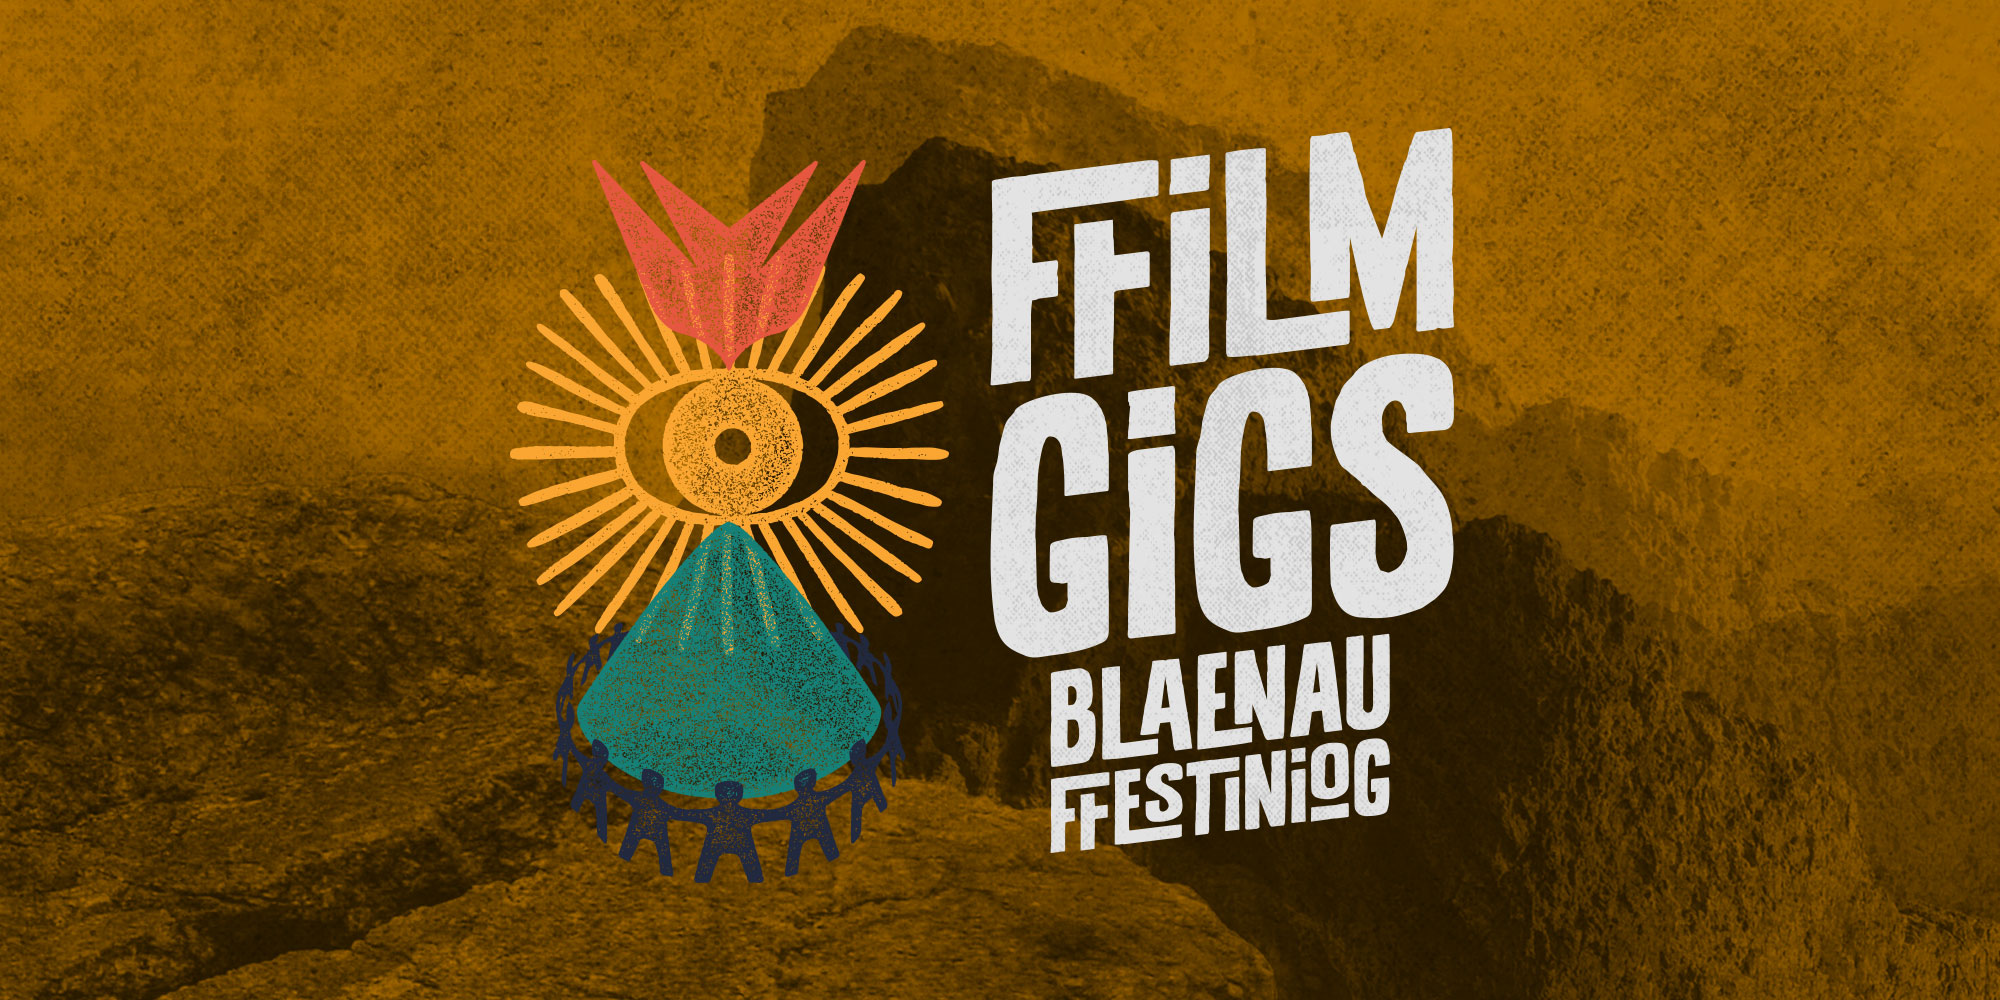 CellB Cinema Ffilm Gigs Blaenau Ffestiniog